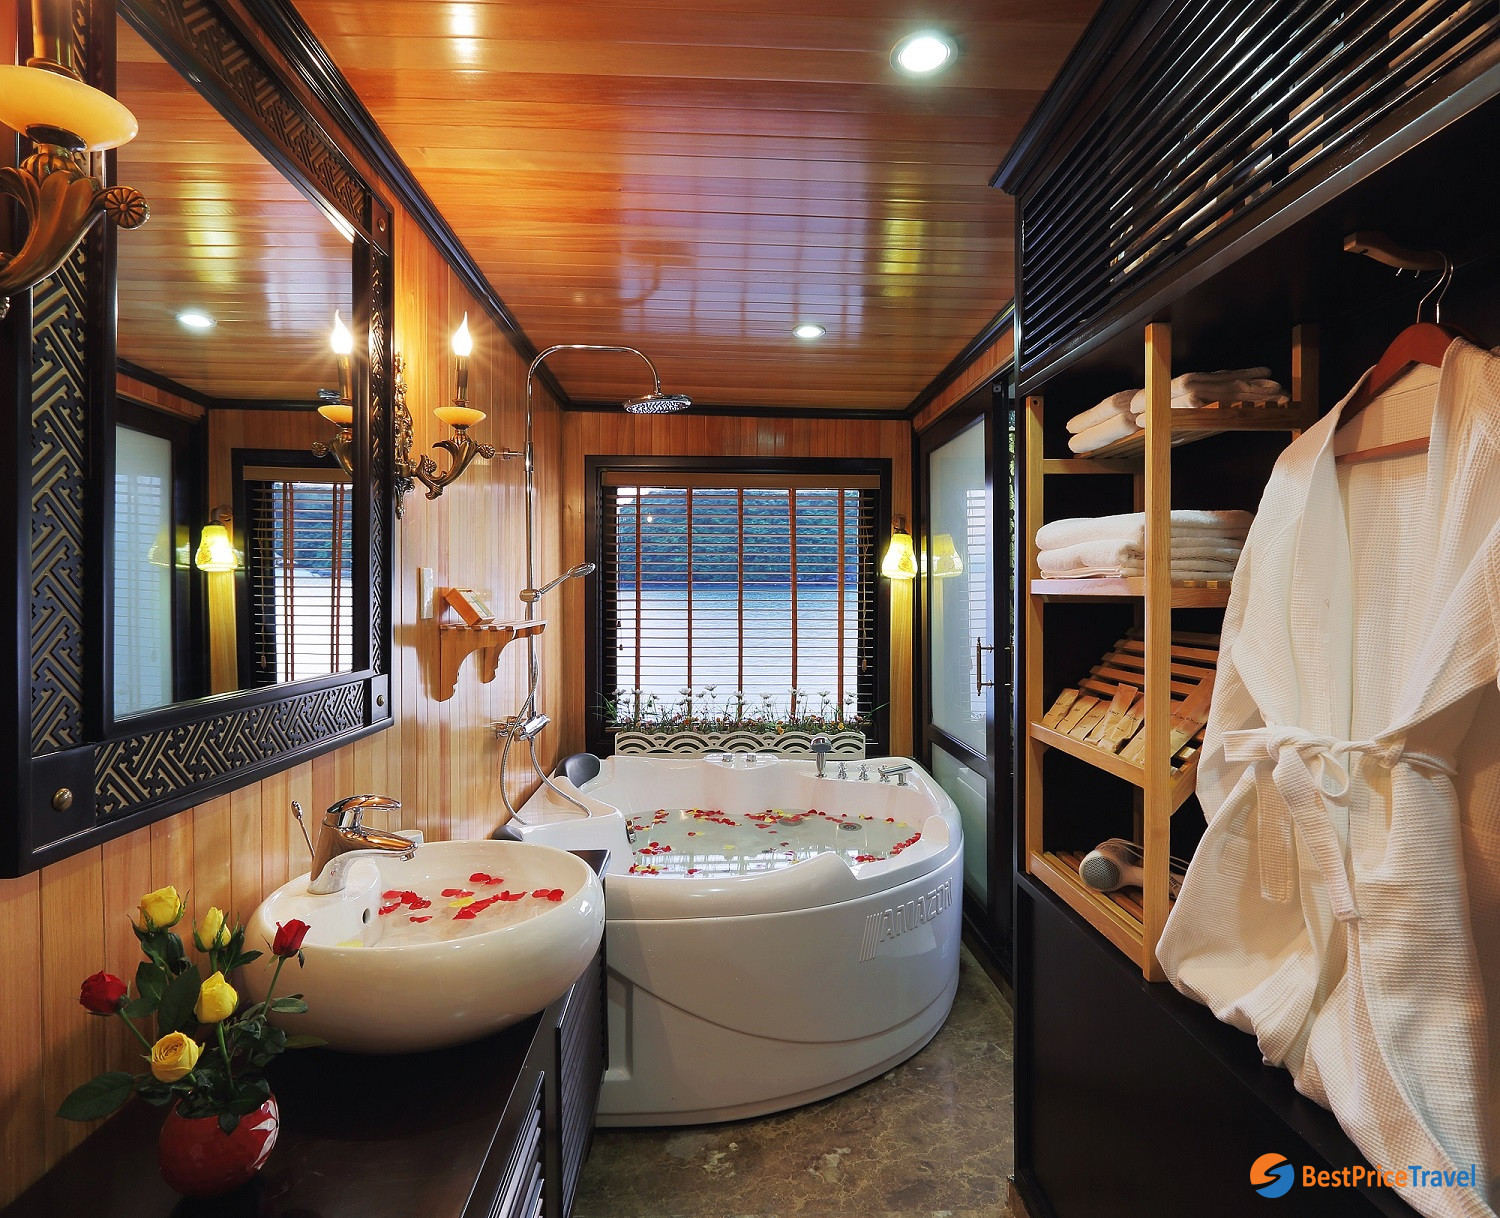 Suite Balcony bathroom with romantic style